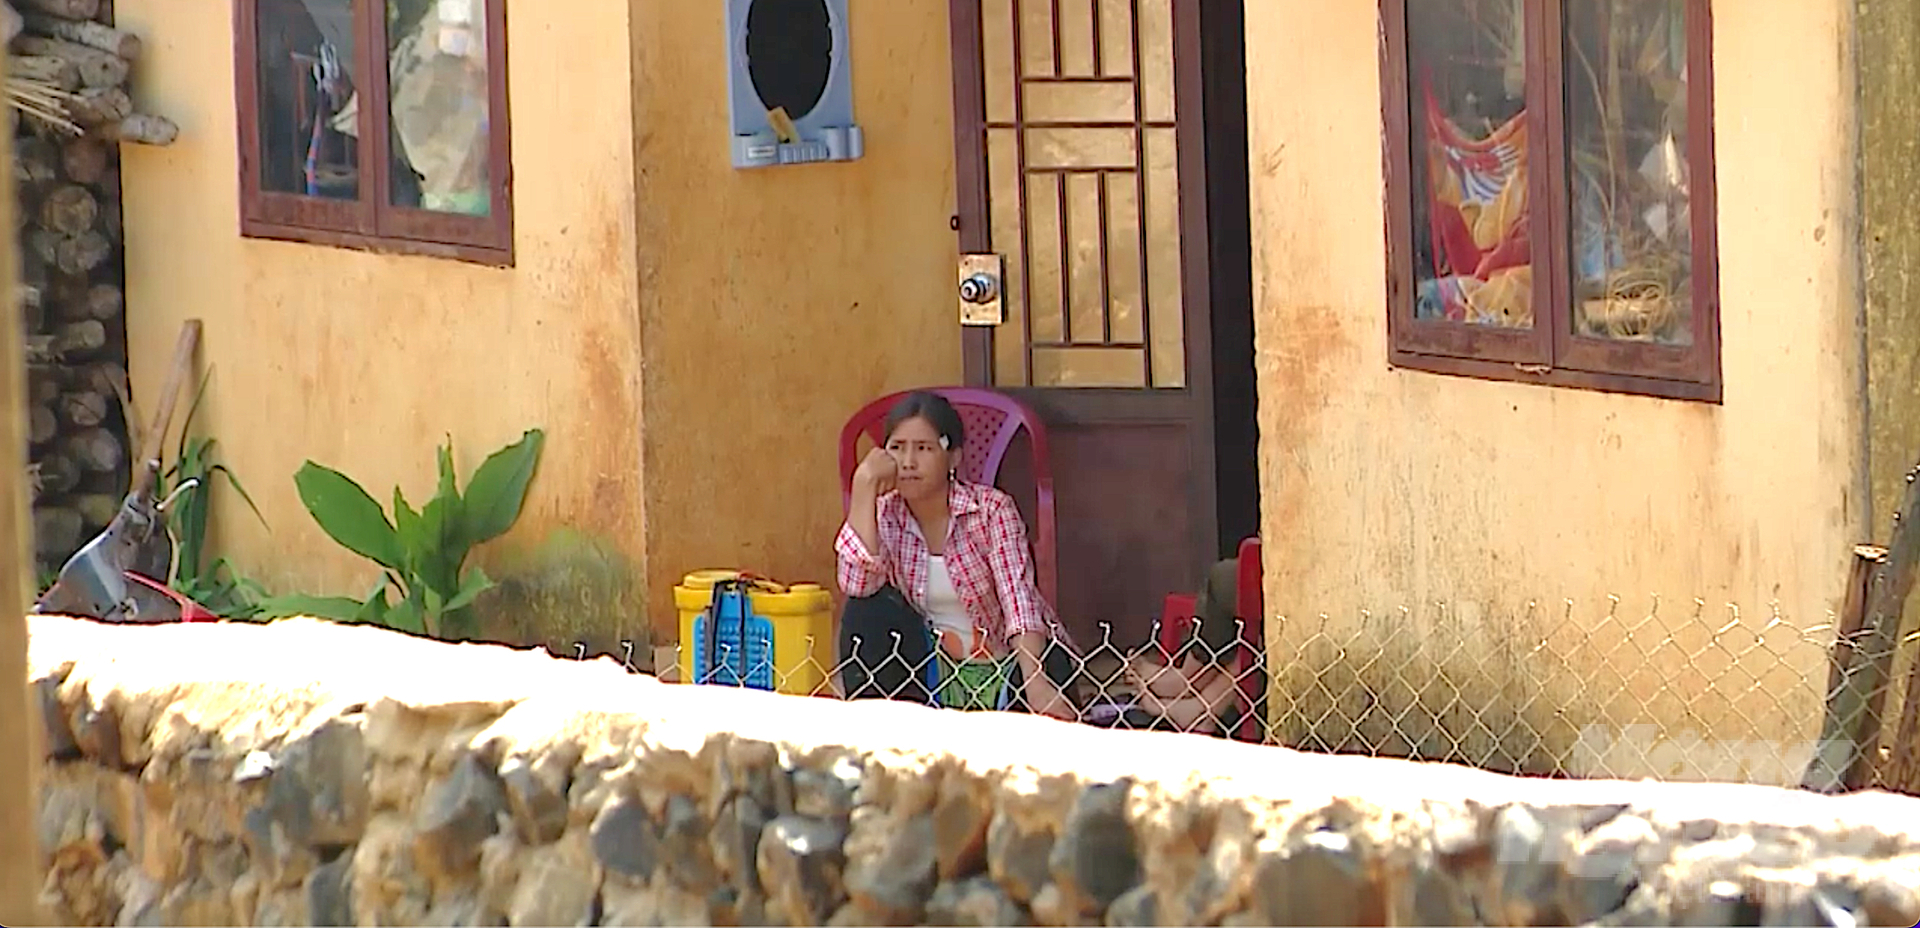 Đi ngang qua một căn nhà tái định cư ở thôn B'Nơm, Đắk P'lao, thấy người phụ nữ ngồi trước cửa, nét mặt ưu tư, tôi dừng lại chào đến lần thứ 3 mà chị không nghe. Ảnh: Phức Lập.